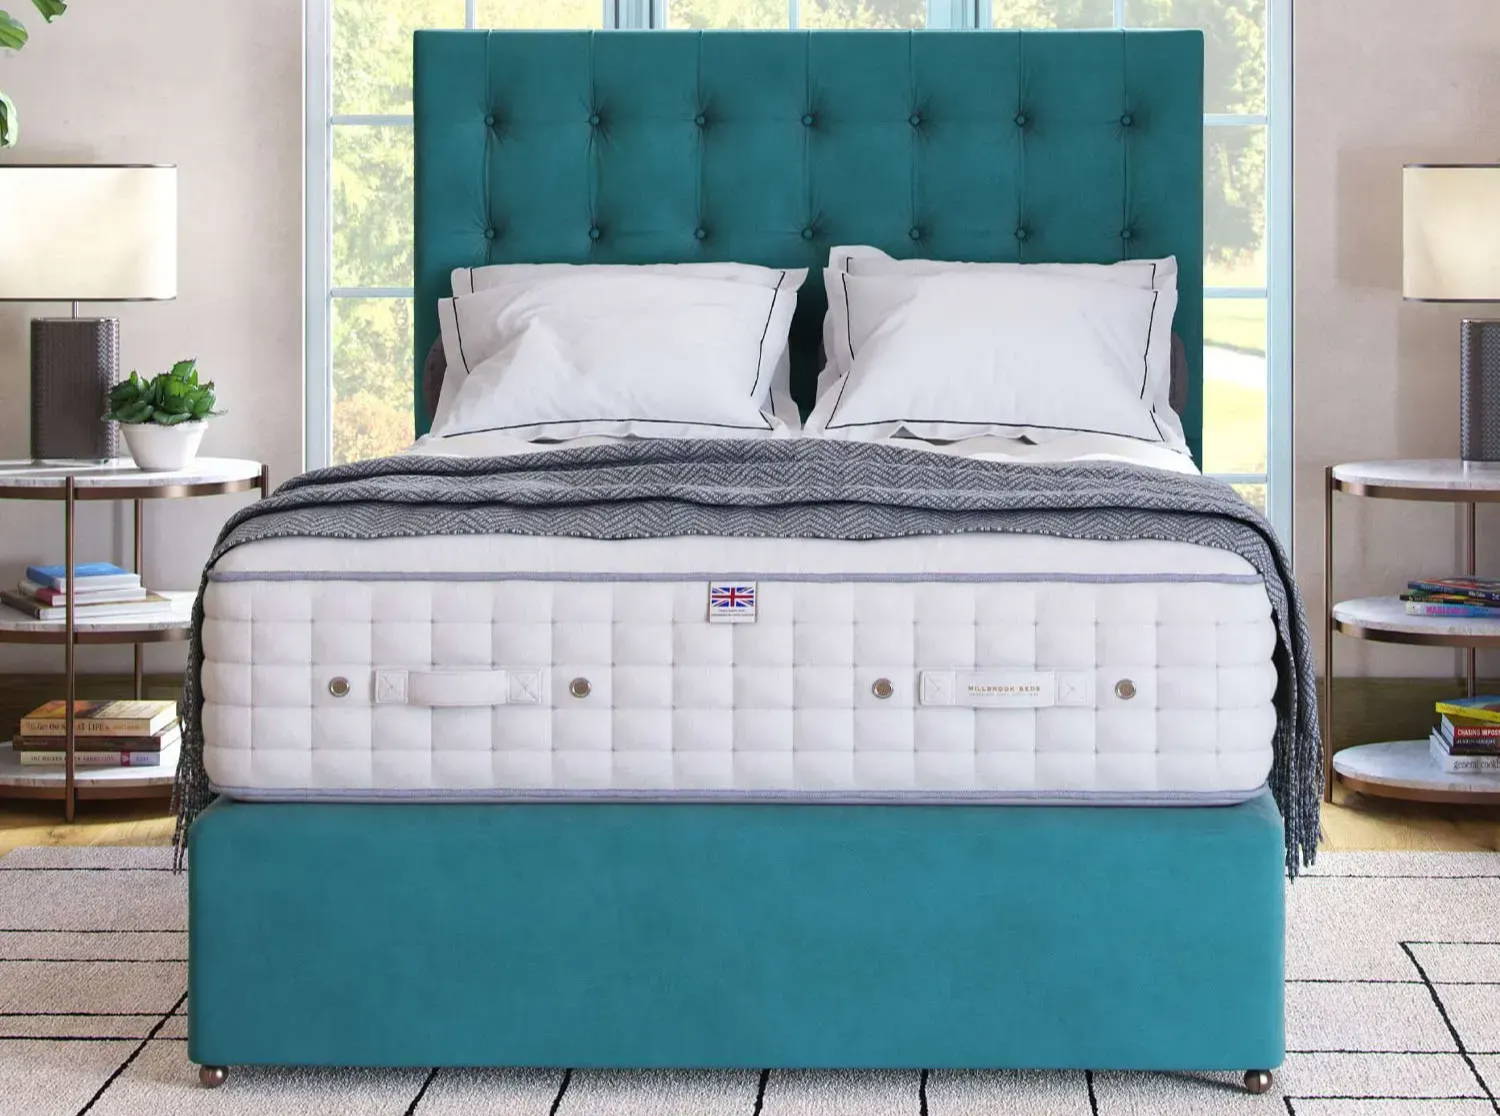 Millbrook mattress on a teal divan base